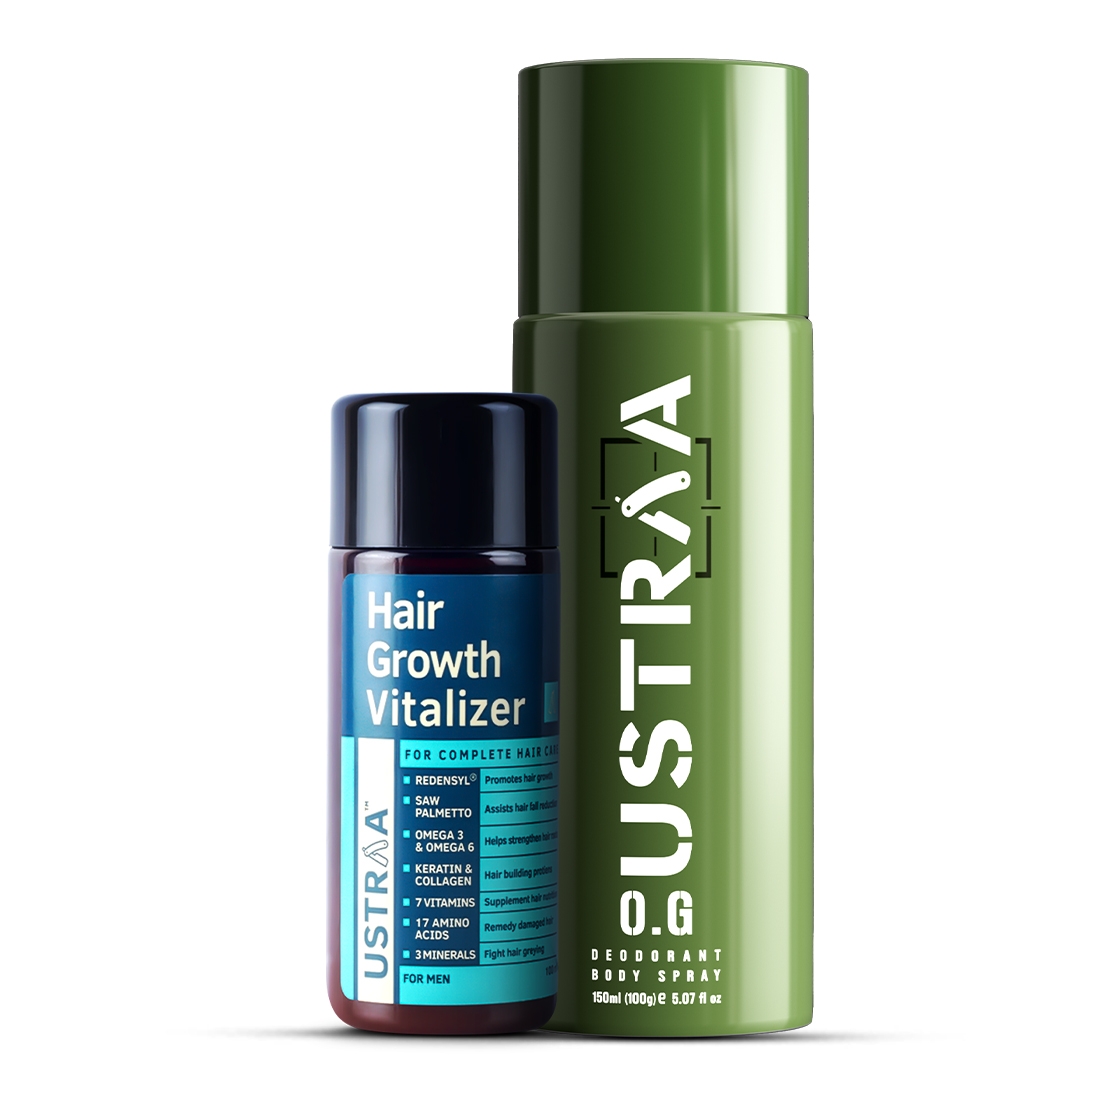 Ustraa Hair Growth Vitalizer For Men - 100ml | eBay